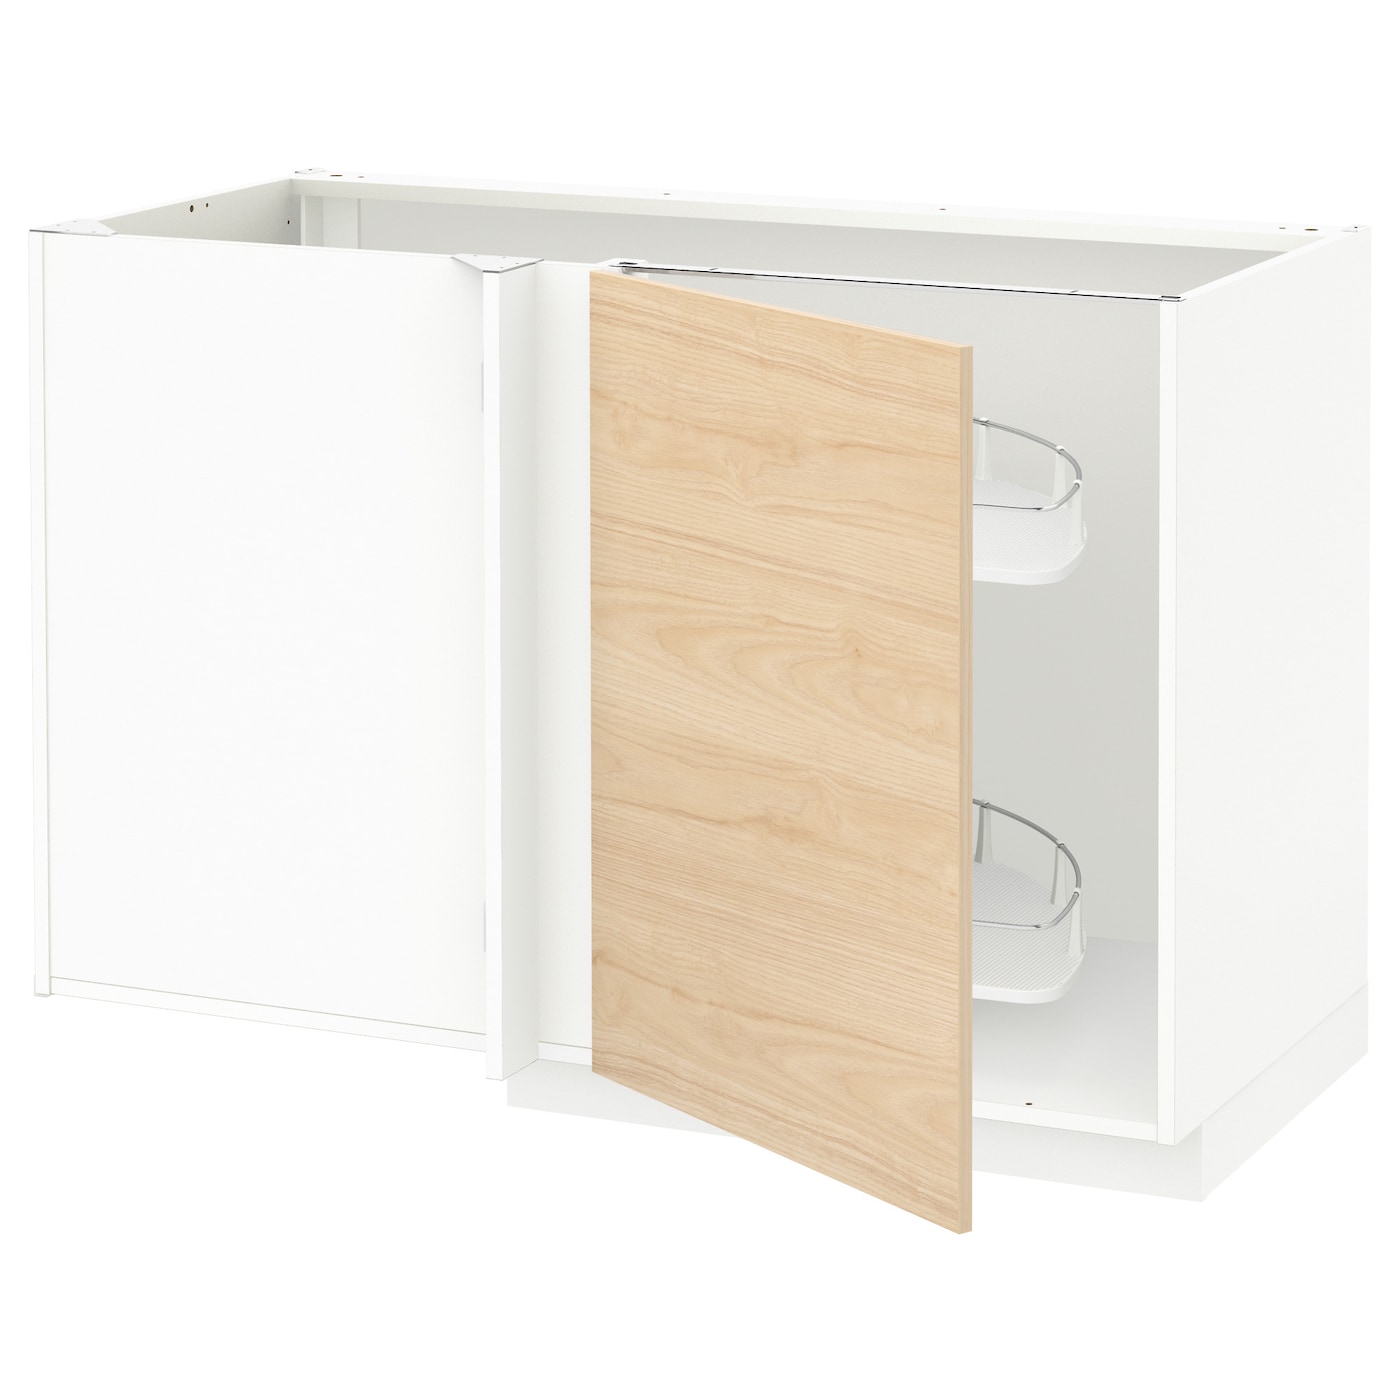 Напольный шкаф - METOD IKEA/ МЕТОД ИКЕА,  128х88 см, белый/под беленый дуб